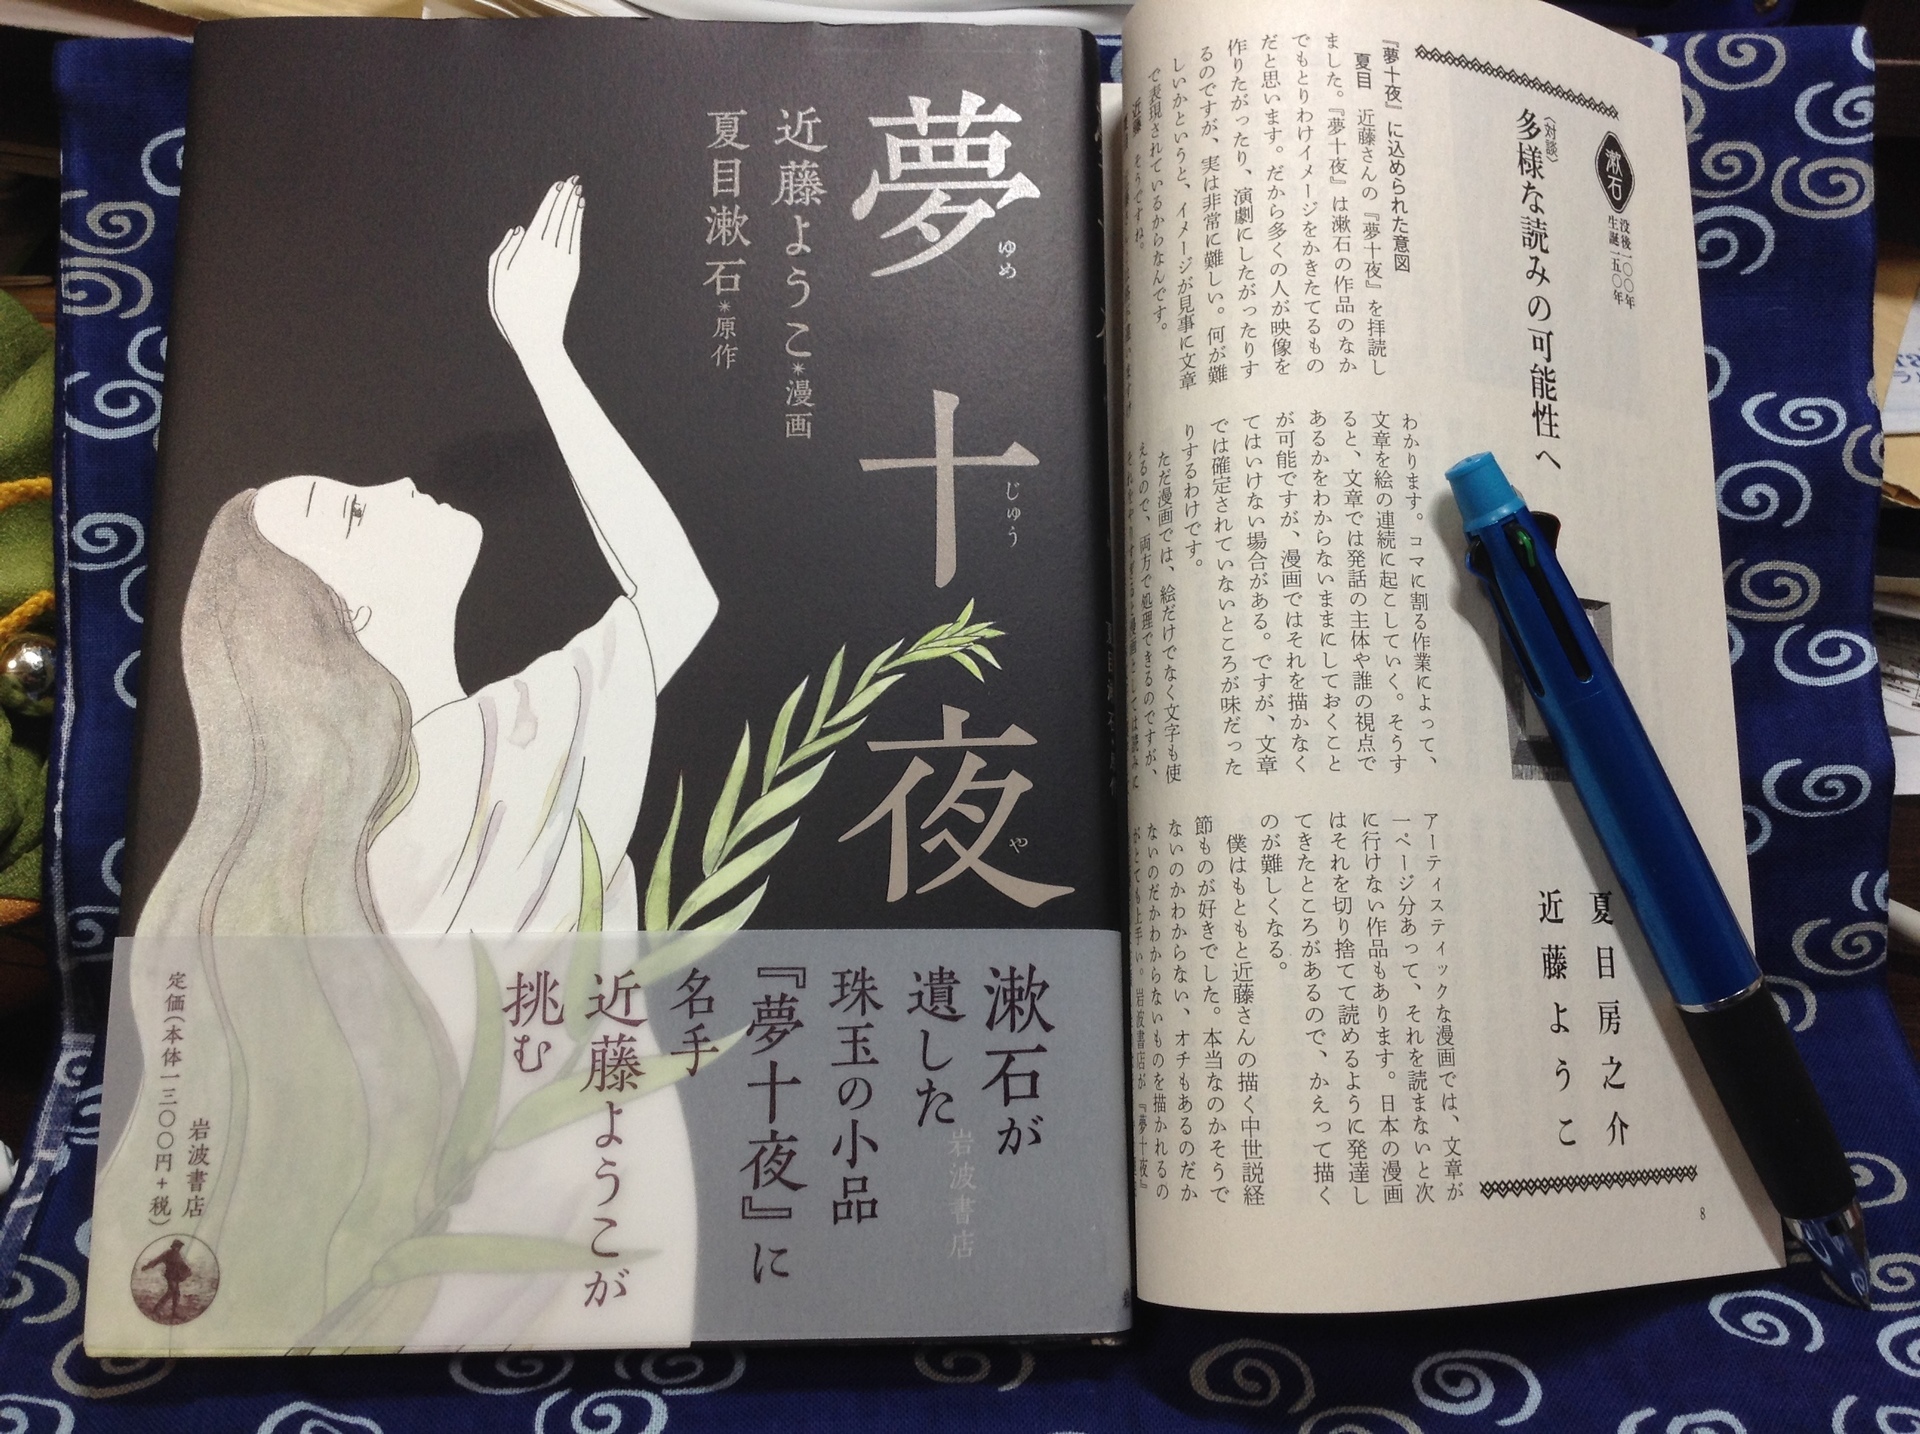 年のベスト 夏目漱石漫画